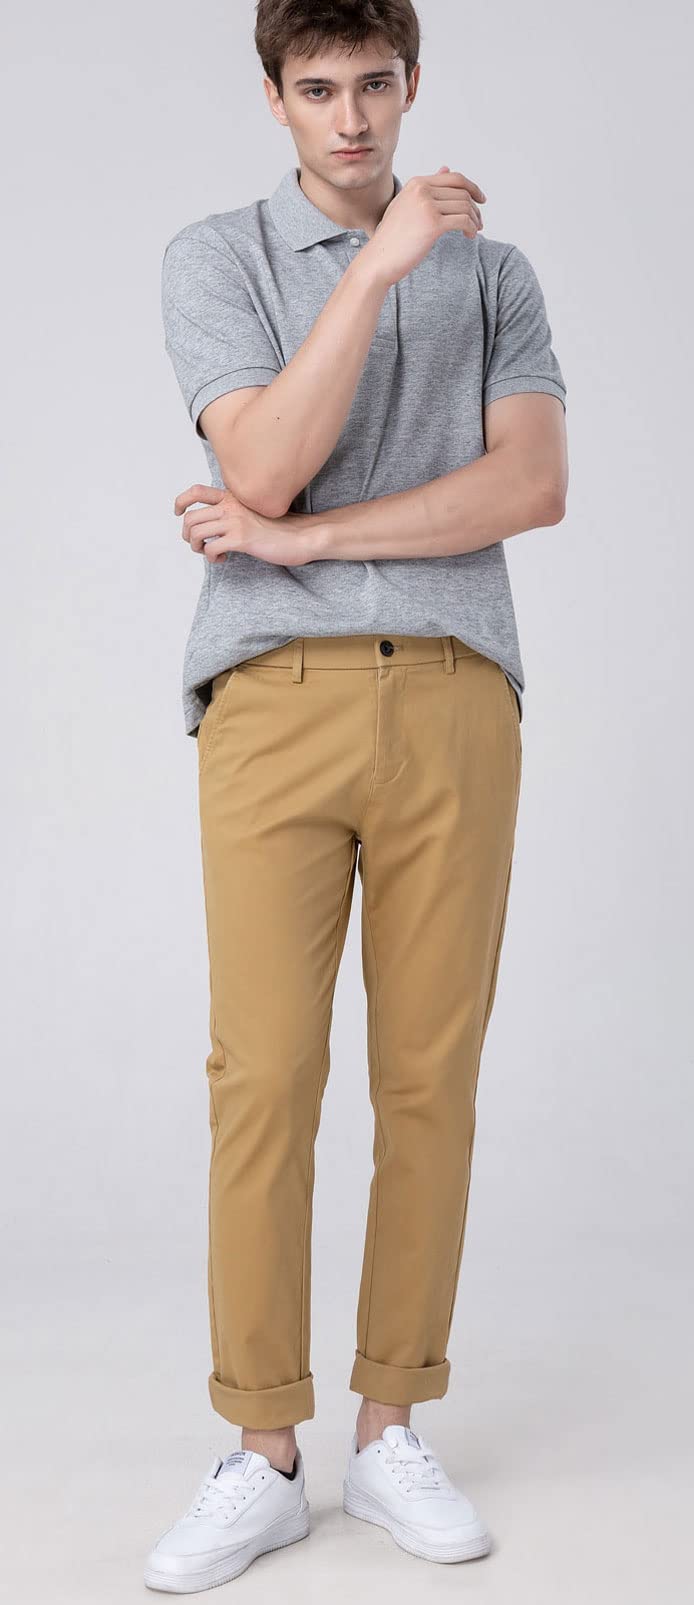 YHAIOGS Pants for Men Pants Jeans Men's Premium No Iron Khaki Straight Fit  & Slim Fit Flat Front Casual Pant Pants Men Pants 232-green Large